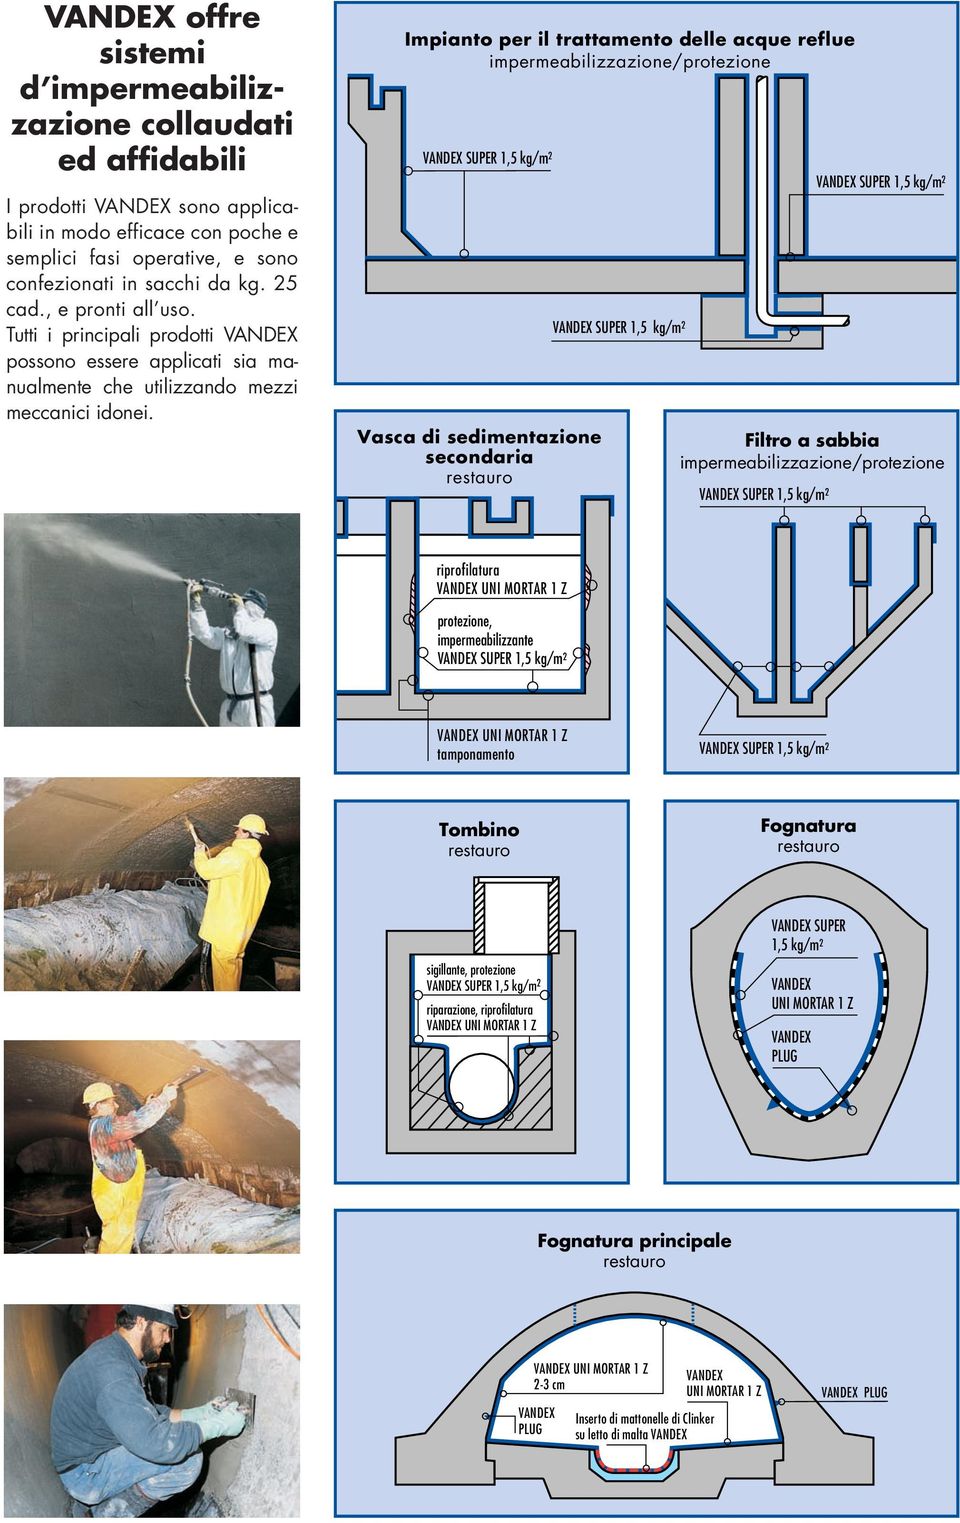 Impianto per il trattamento delle acque reflue impermeabilizzazione/protezione Vasca di sedimentazione secondaria Filtro Sewer a sabbia cross impermeabilizzazione/protezione section 100/150